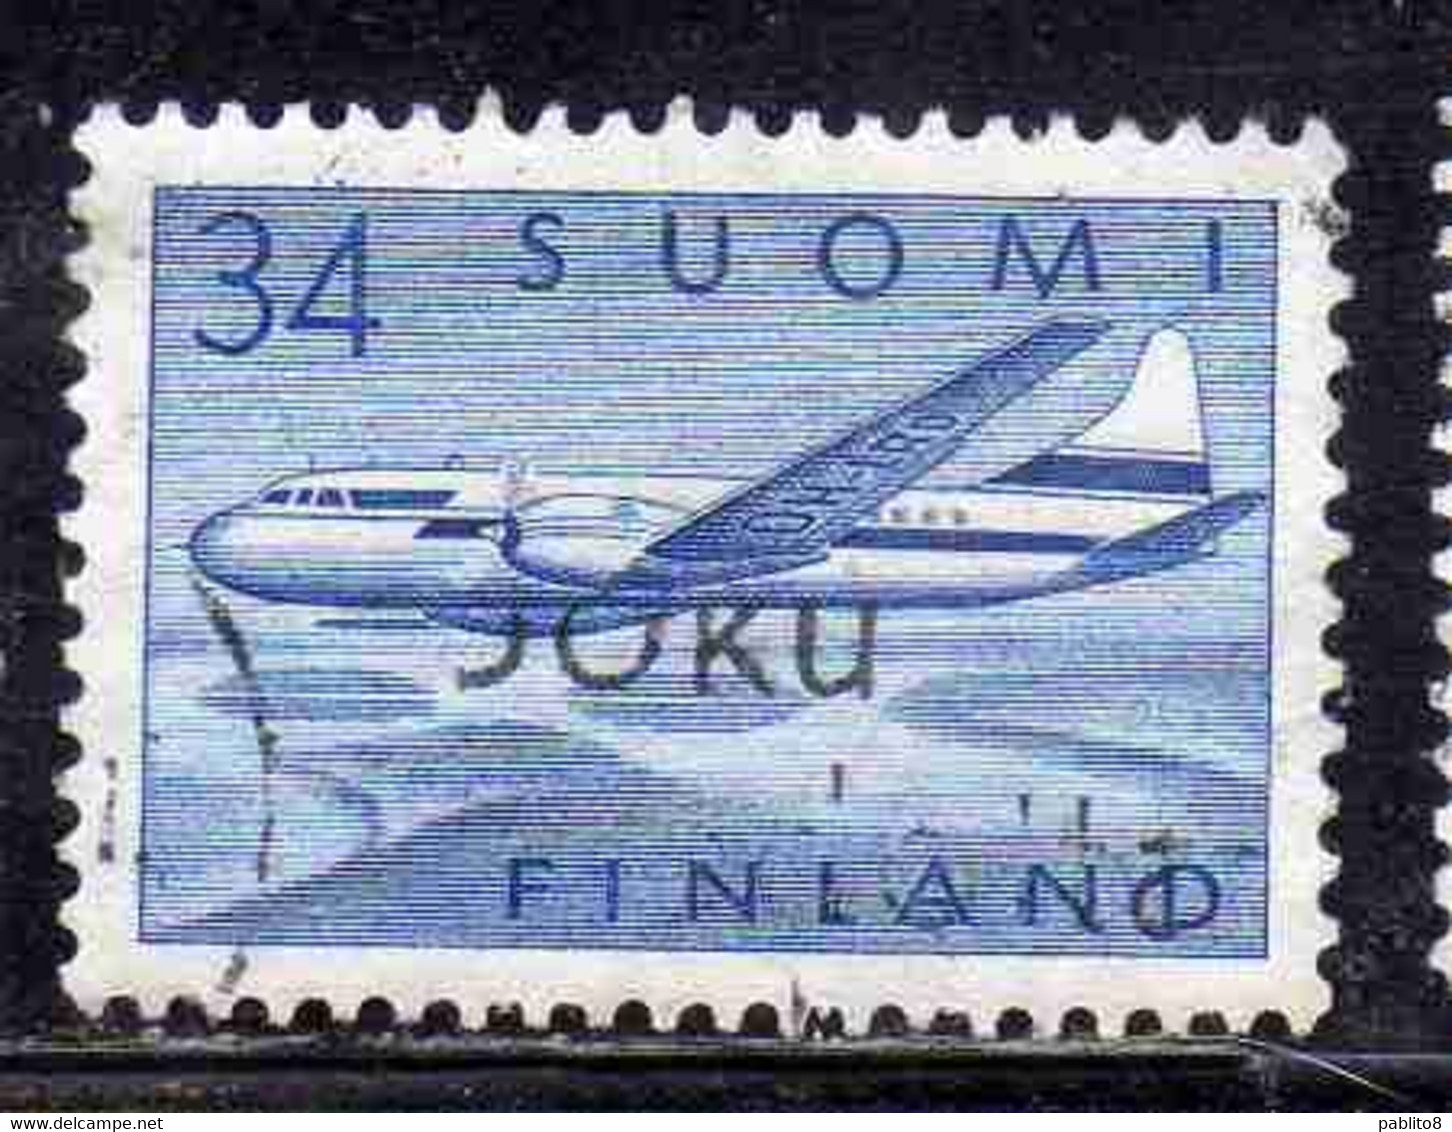 SUOMI FINLAND FINLANDIA FINLANDE 1958 AIR POST MAIL AIRMAIL CONVAIR OVER LAKES 34m USED USATO OBLITERE' - Usati